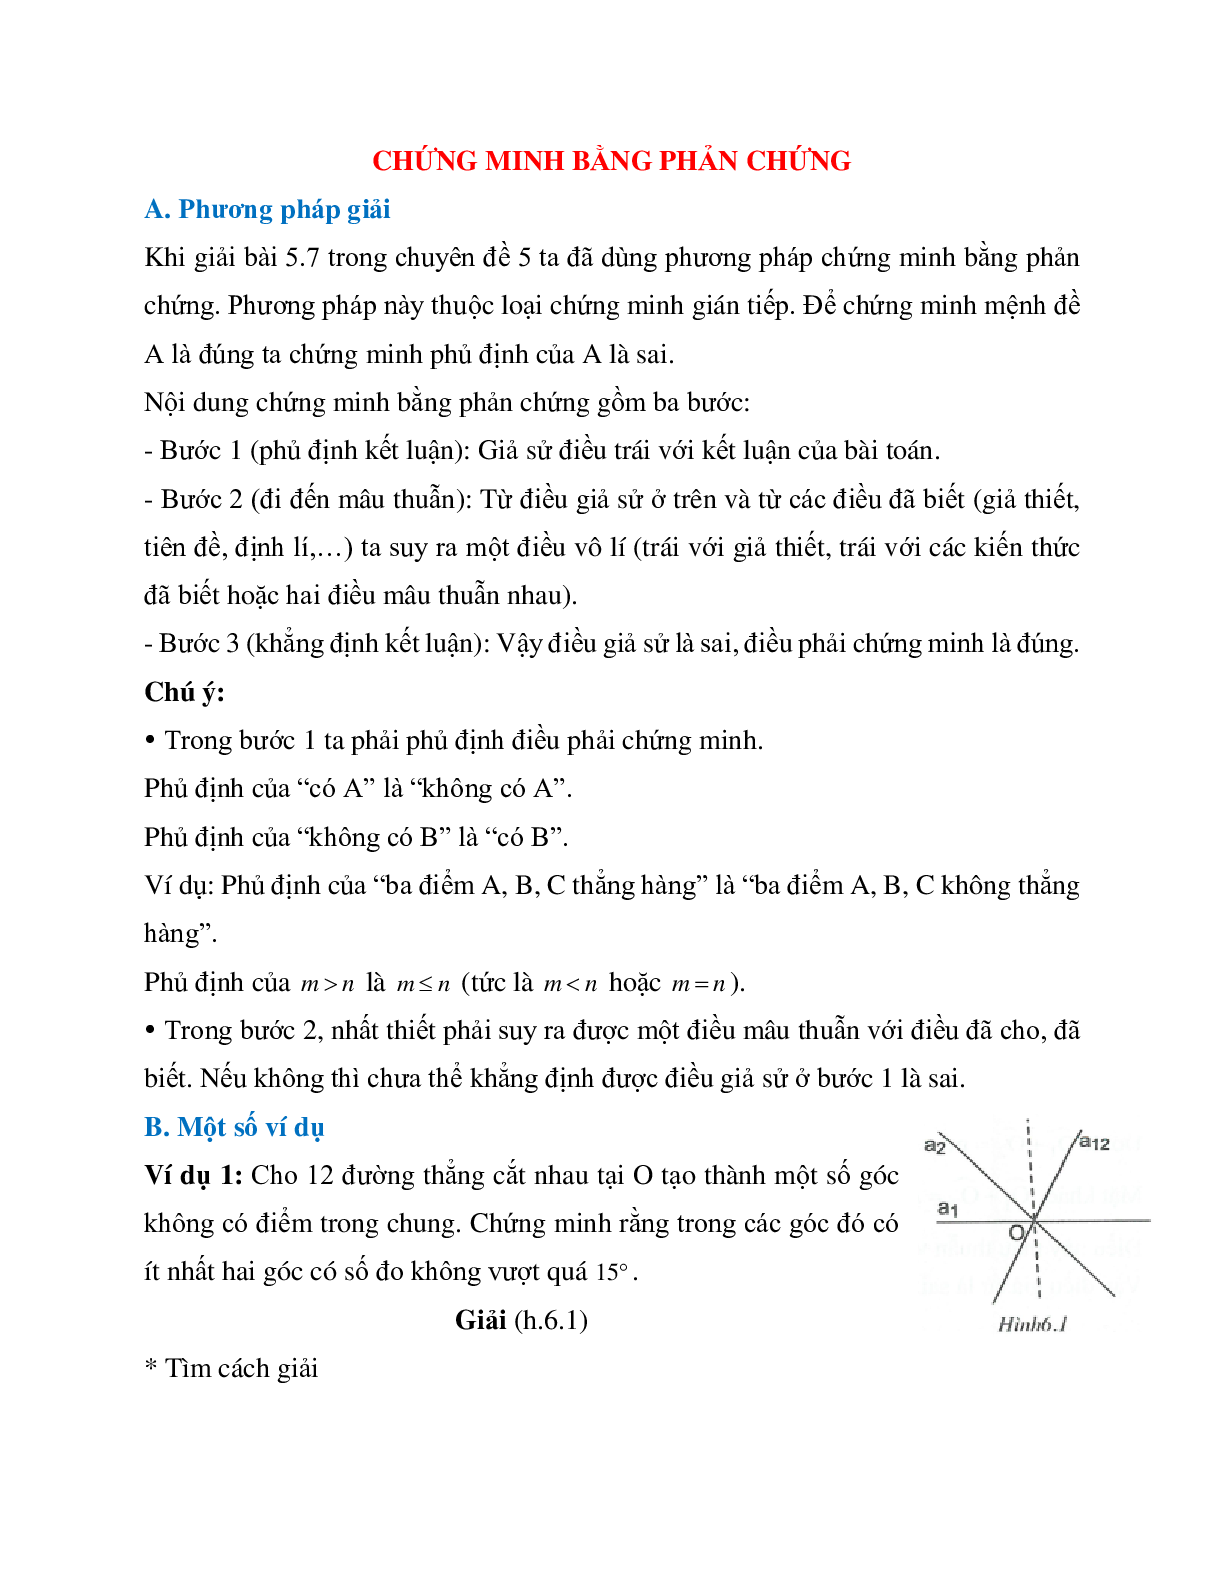 Phương pháp giải và bài tập về Chứng minh bằng phản chứng hình học lớp 7 có lời giải (trang 1)